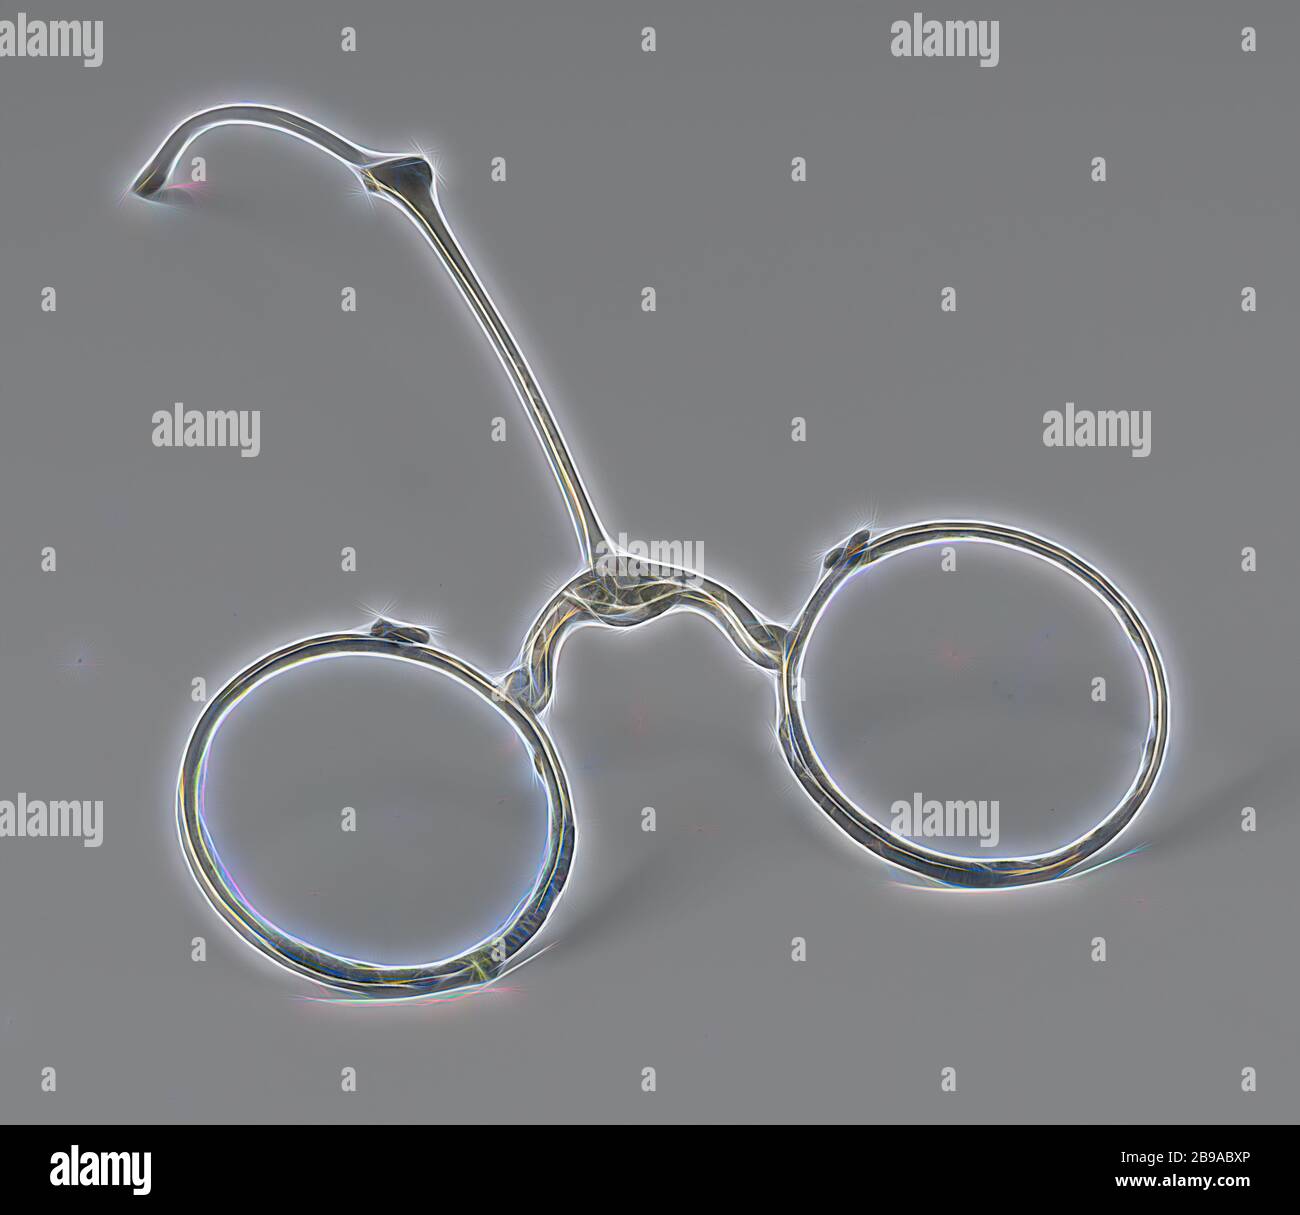 Lunettes frontales avec monture argentée et verres ronds polis, lunettes  frontales avec monture argentée avec cuillère fixée au pont entre les  lentilles et les lentilles rondes meulées. Modèle : au milieu du